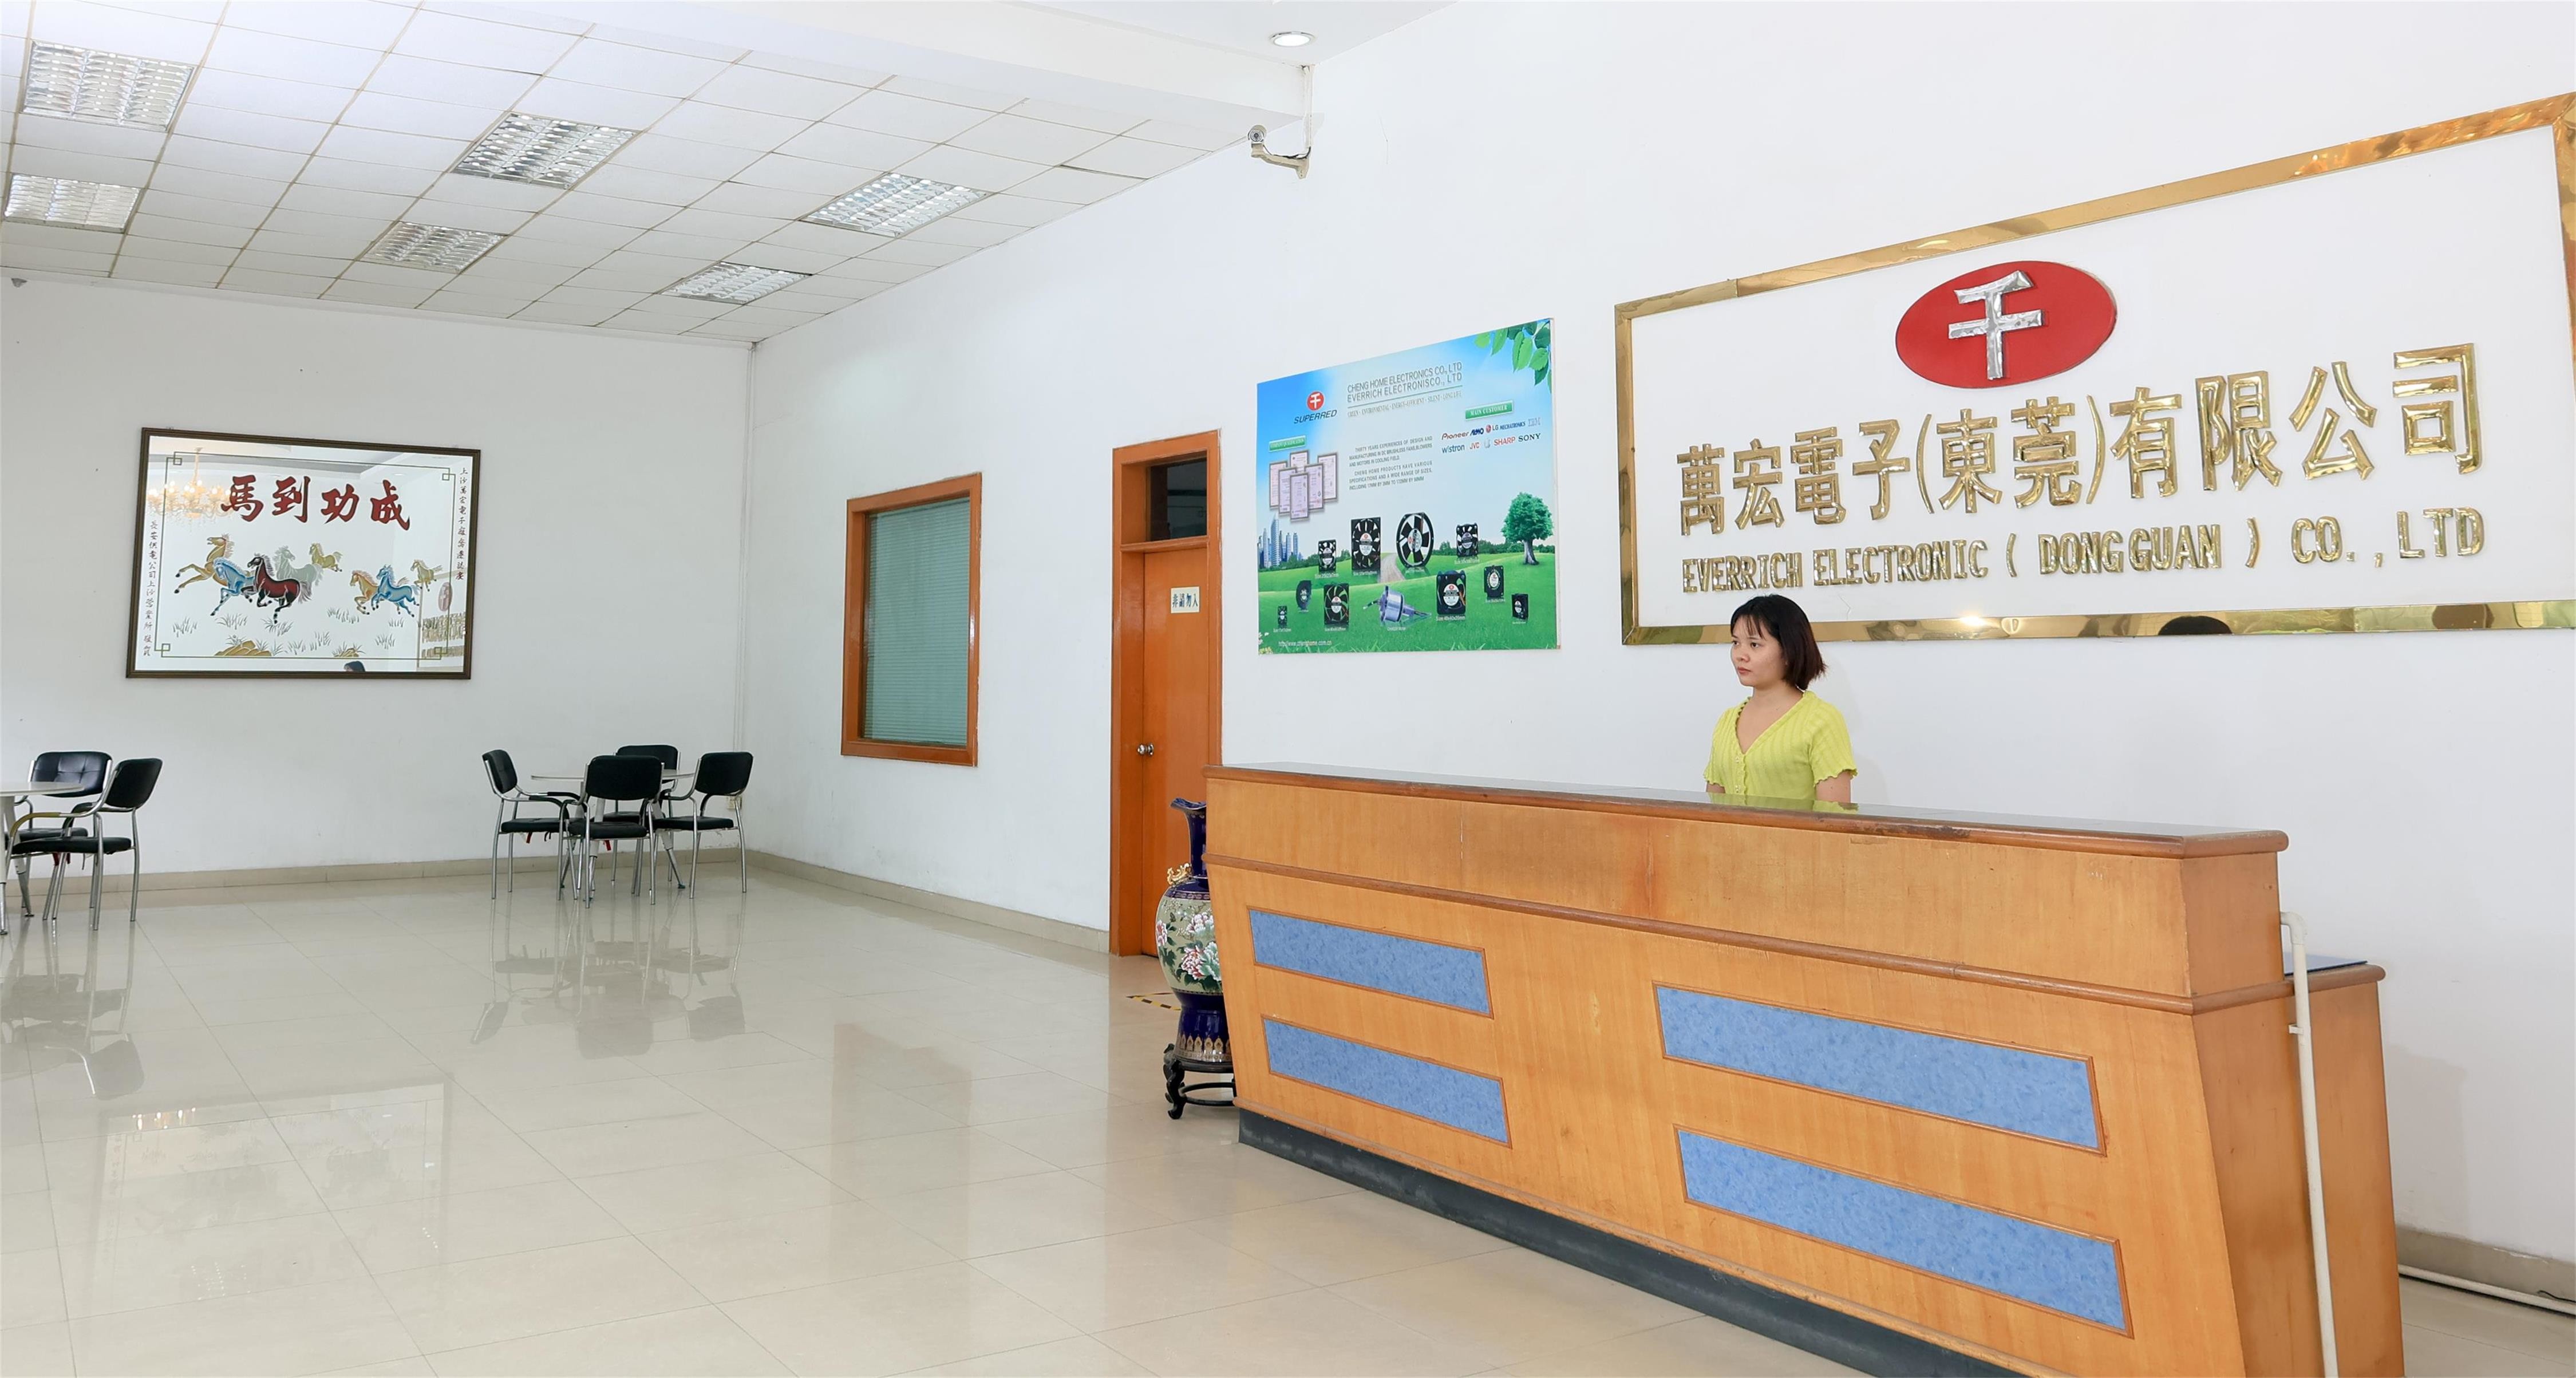 LA CHINE Cheng Home Electronics Co.,Ltd Profil de la société